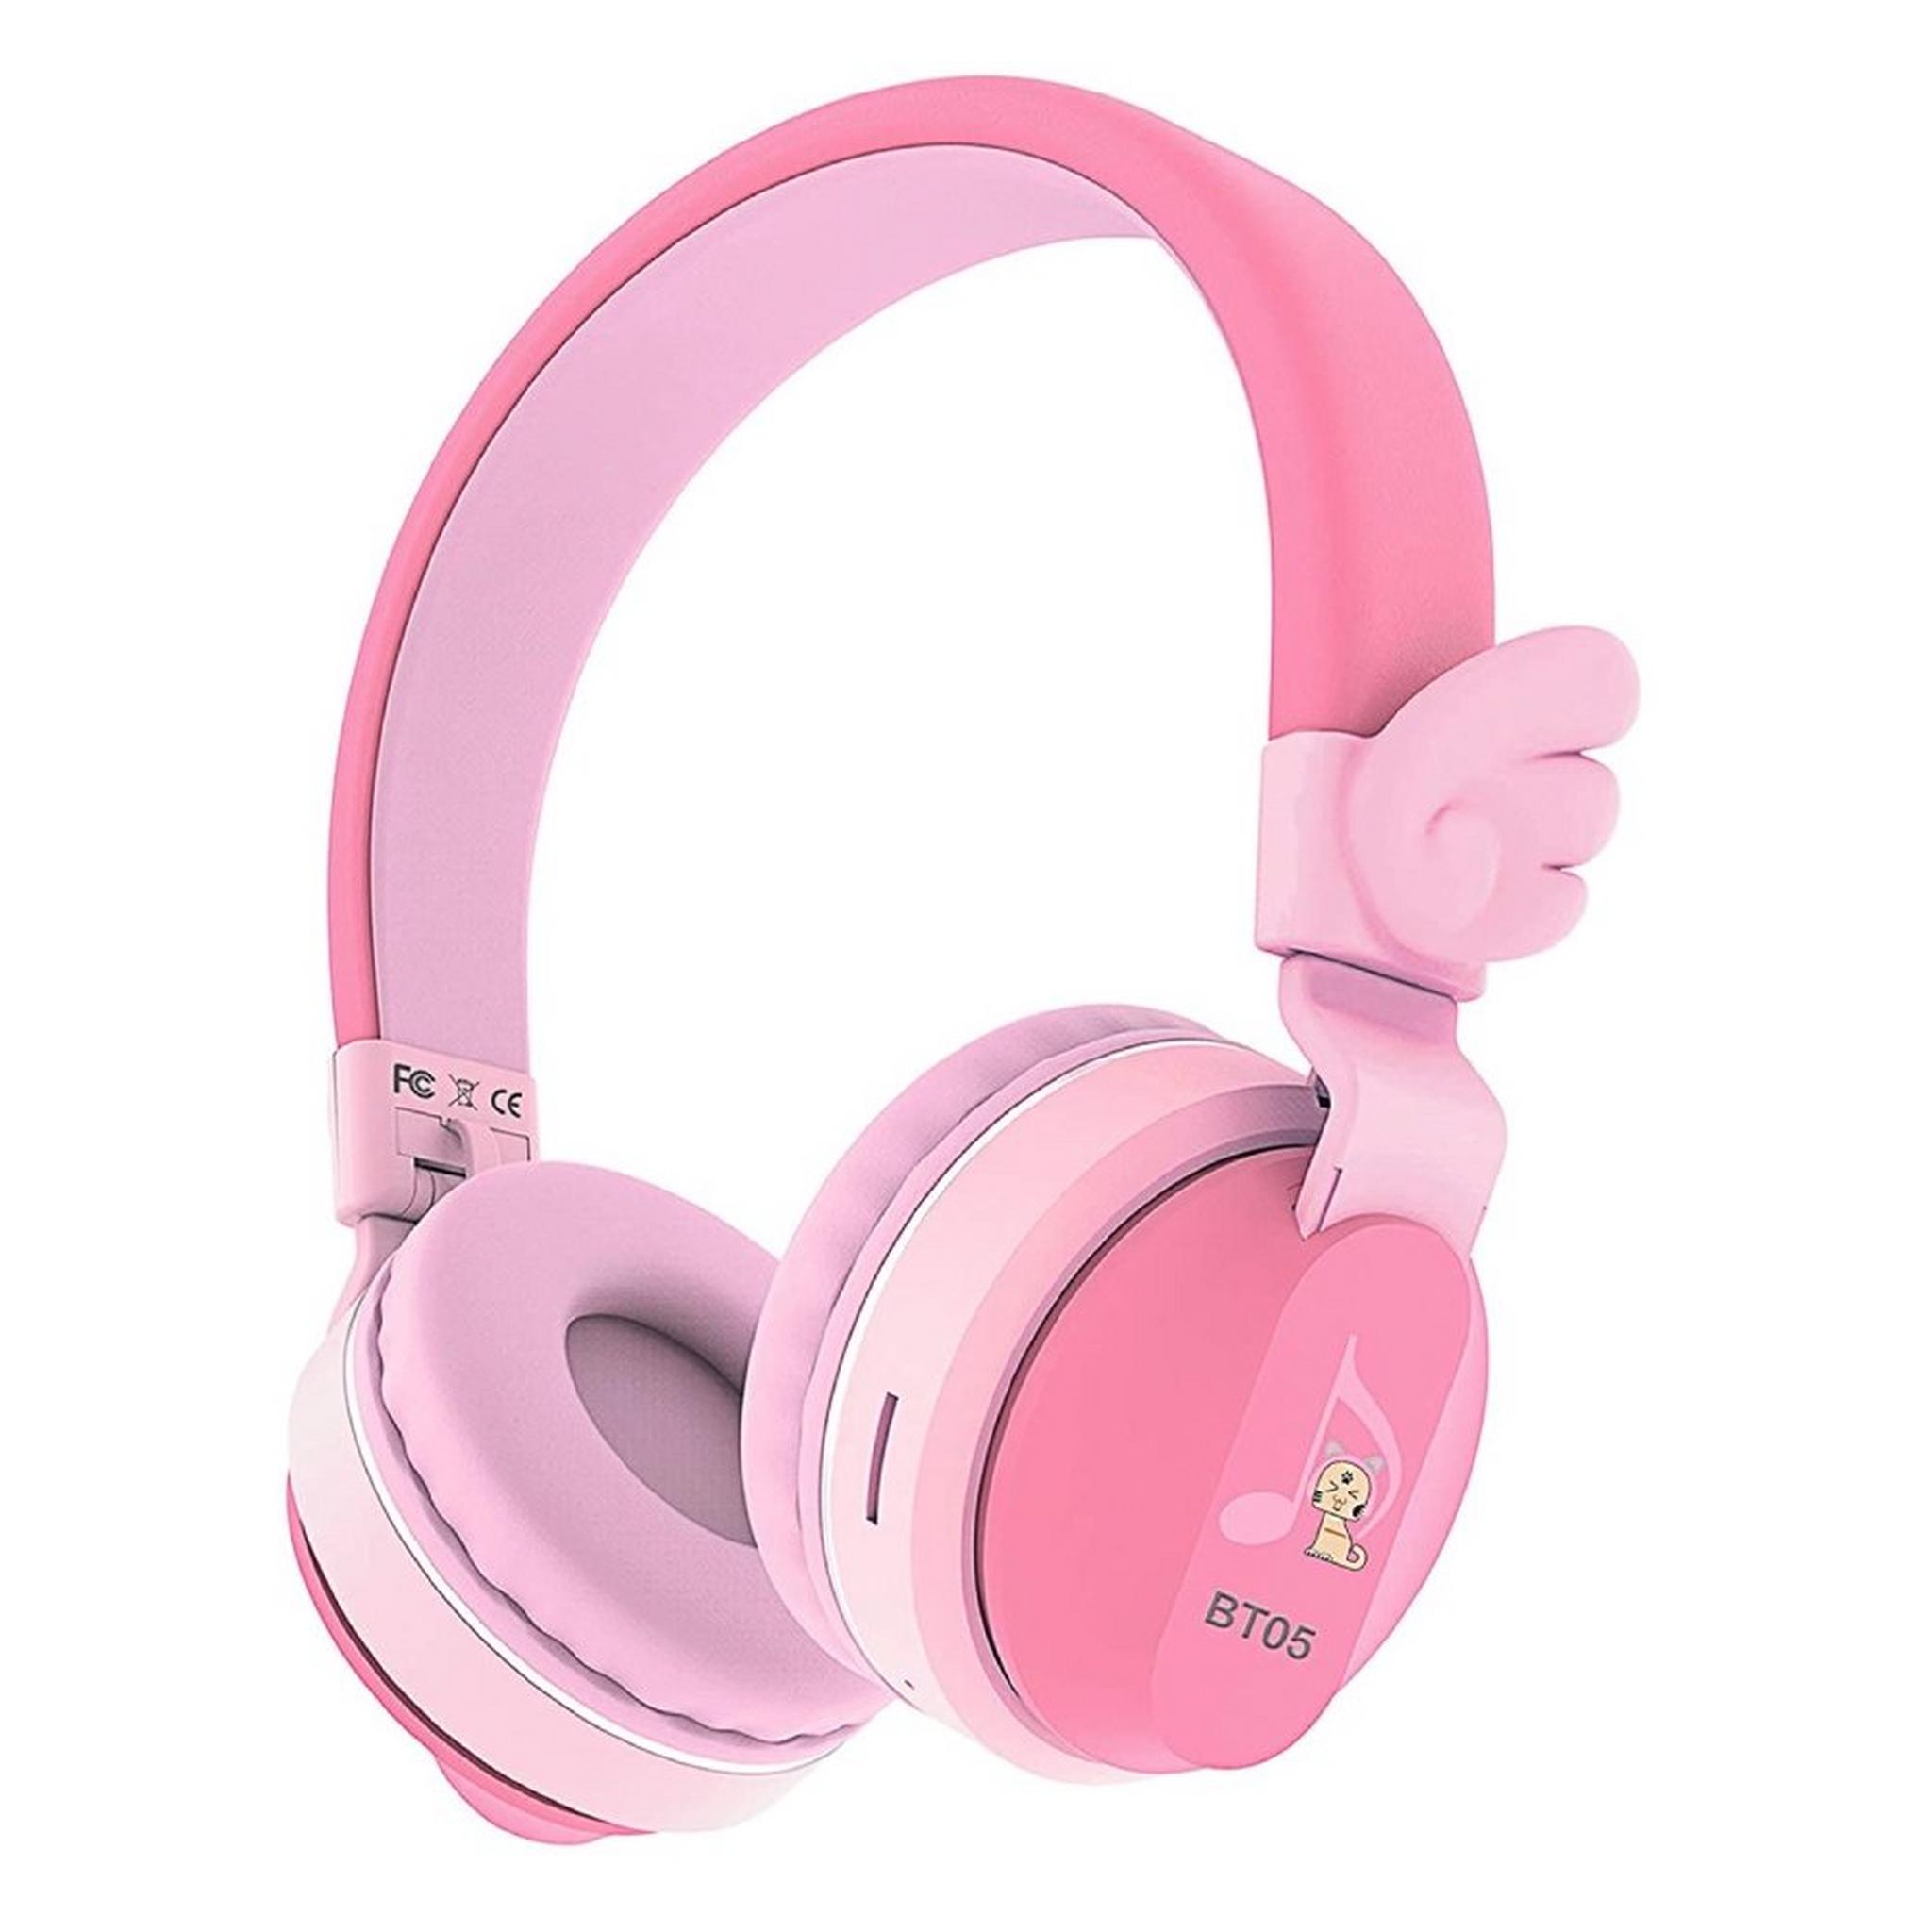 Riwbox Wings Kids Bluetooth Headphones - Pink/Red